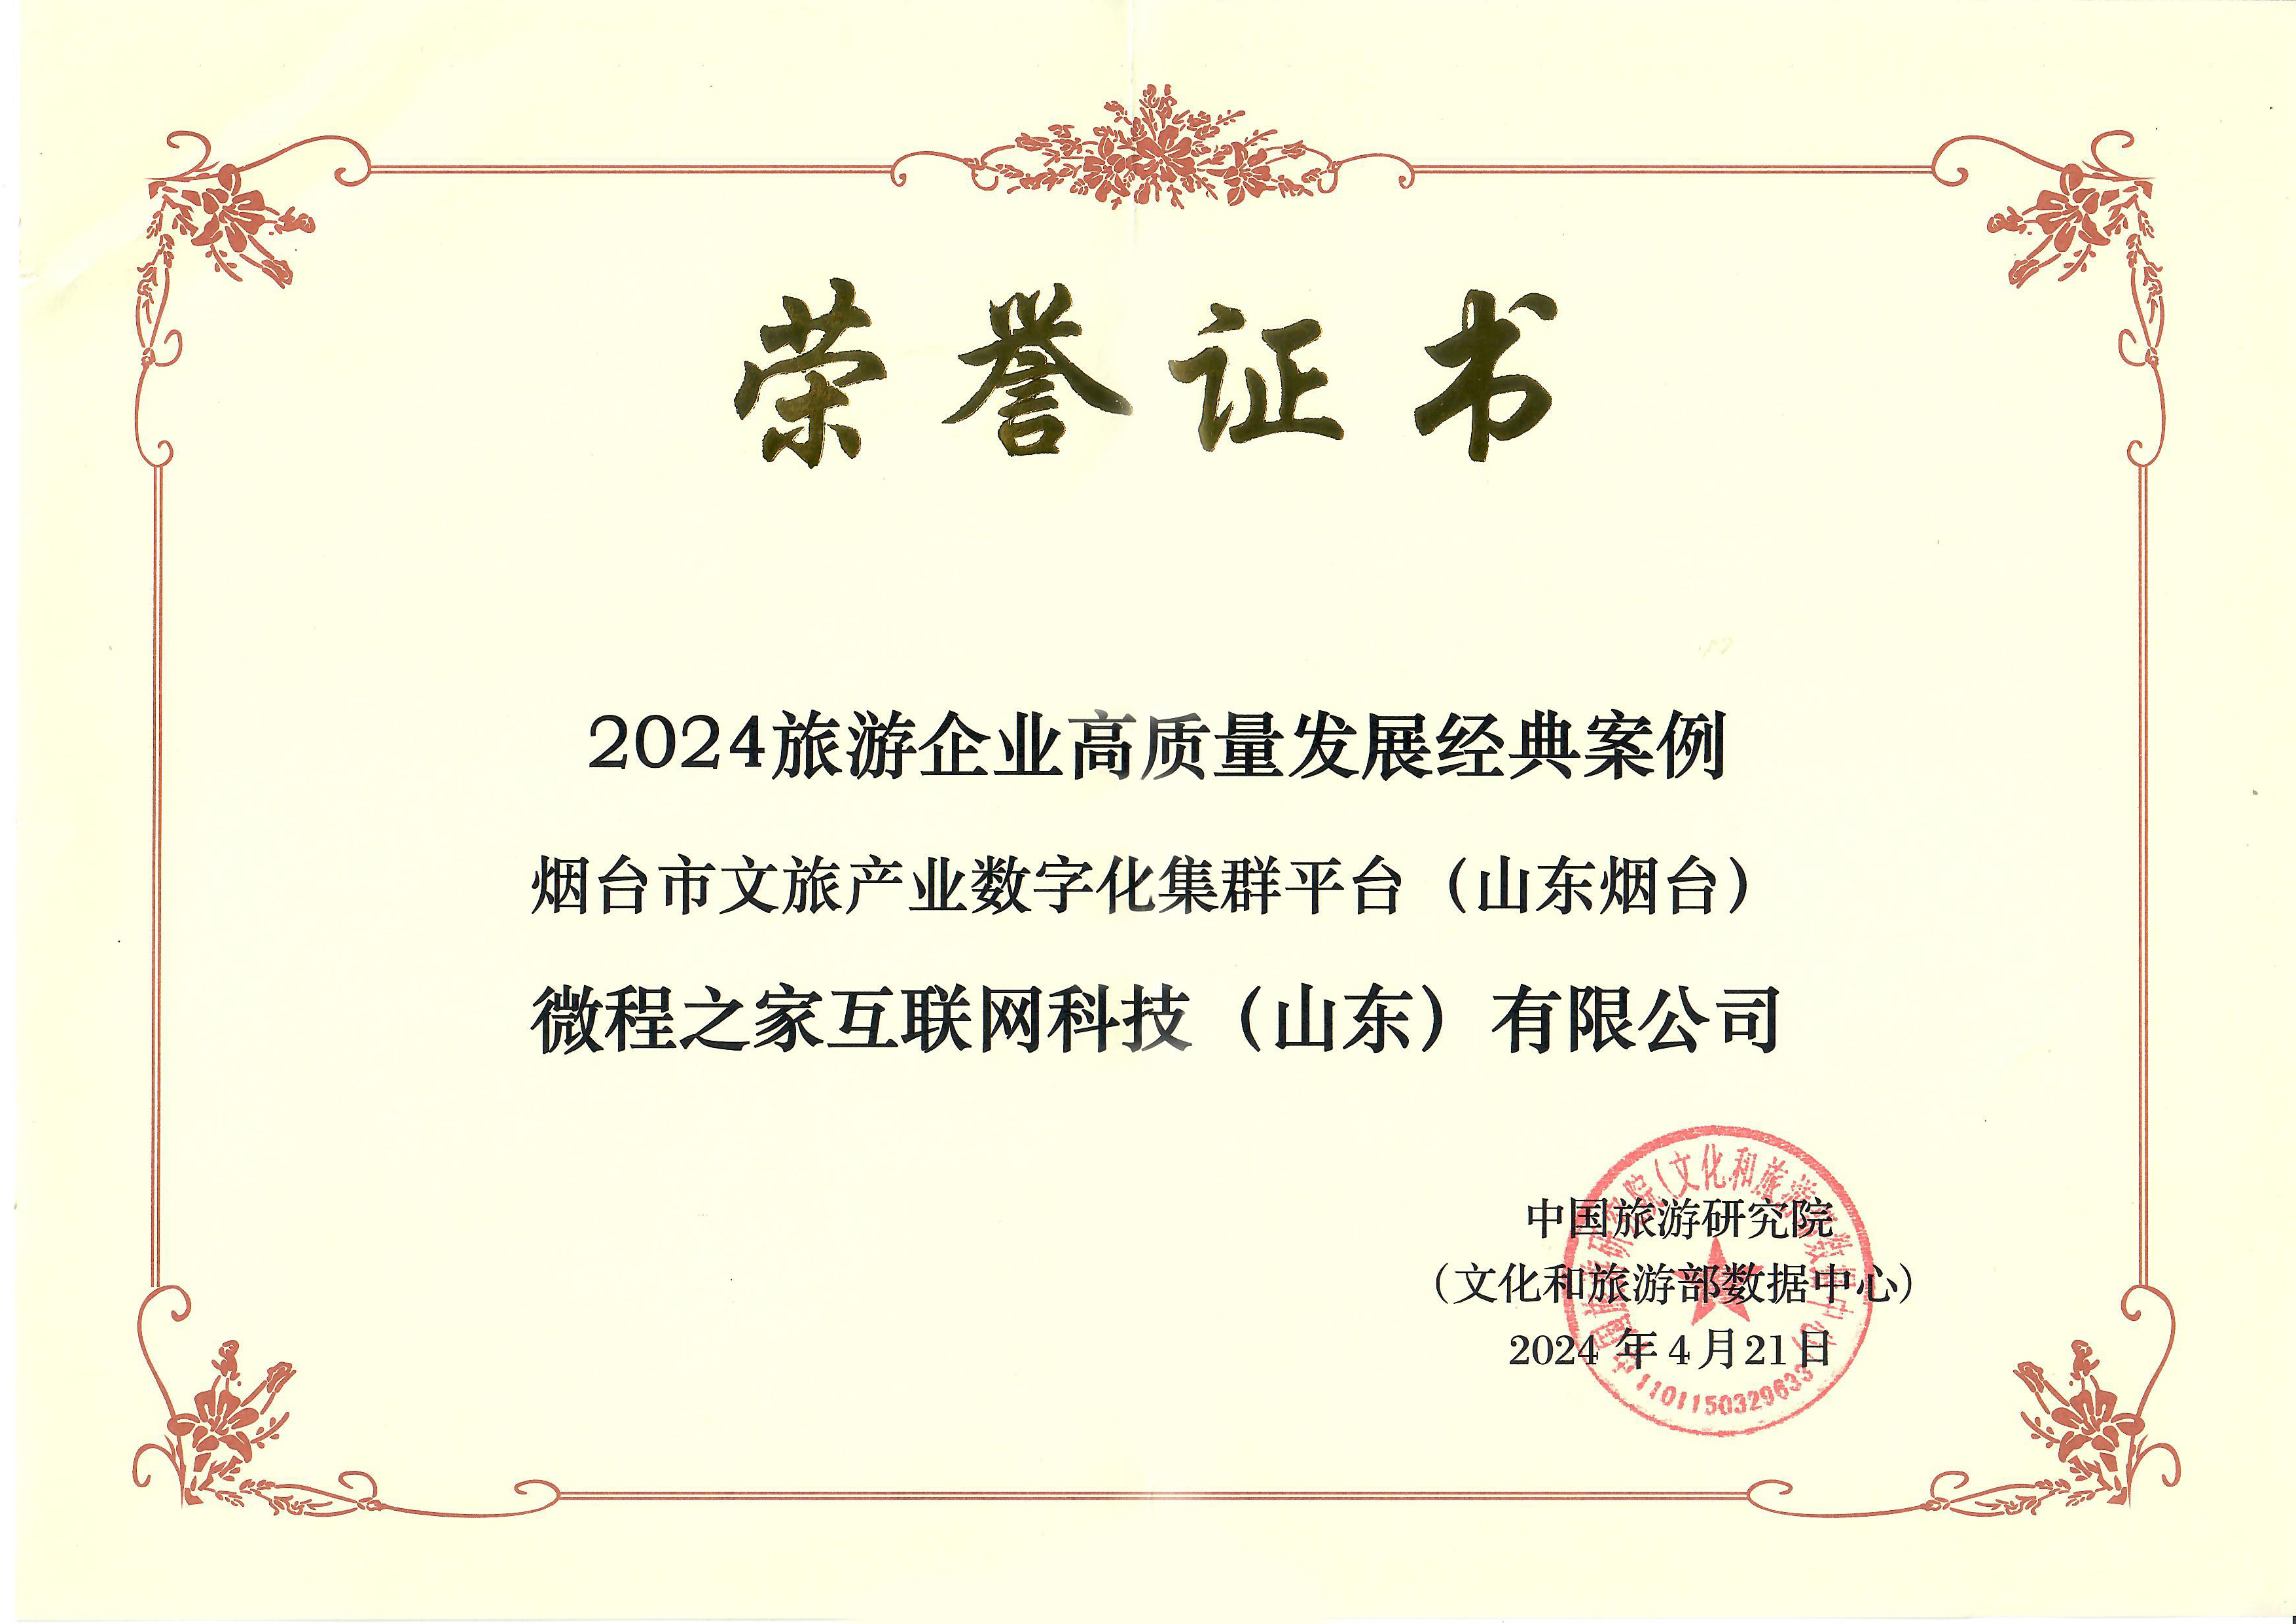 微程之家 - “仙境烟台游”荣获中国旅游研究院评选的《2024旅游企业高质量发展经典案例》